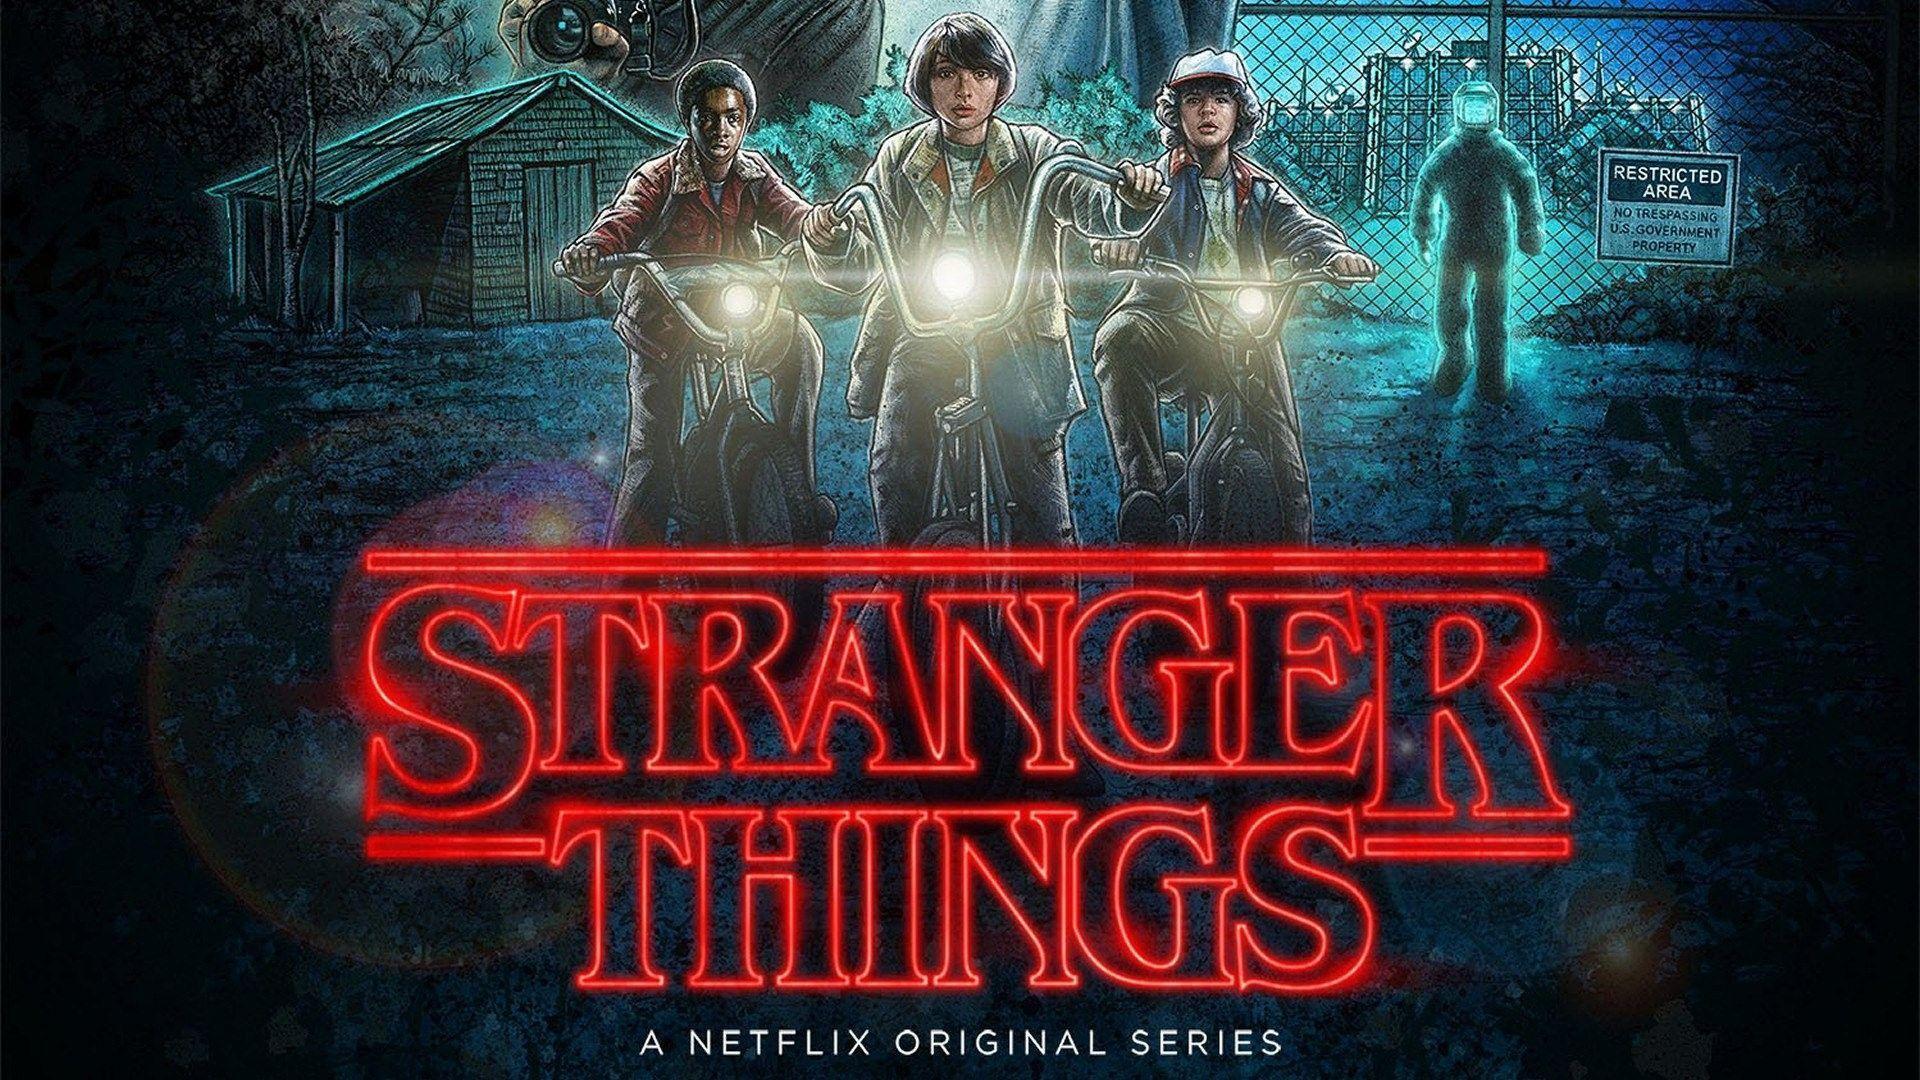 Netflix Stranger Things Season 3 2019 Image Wallpapers